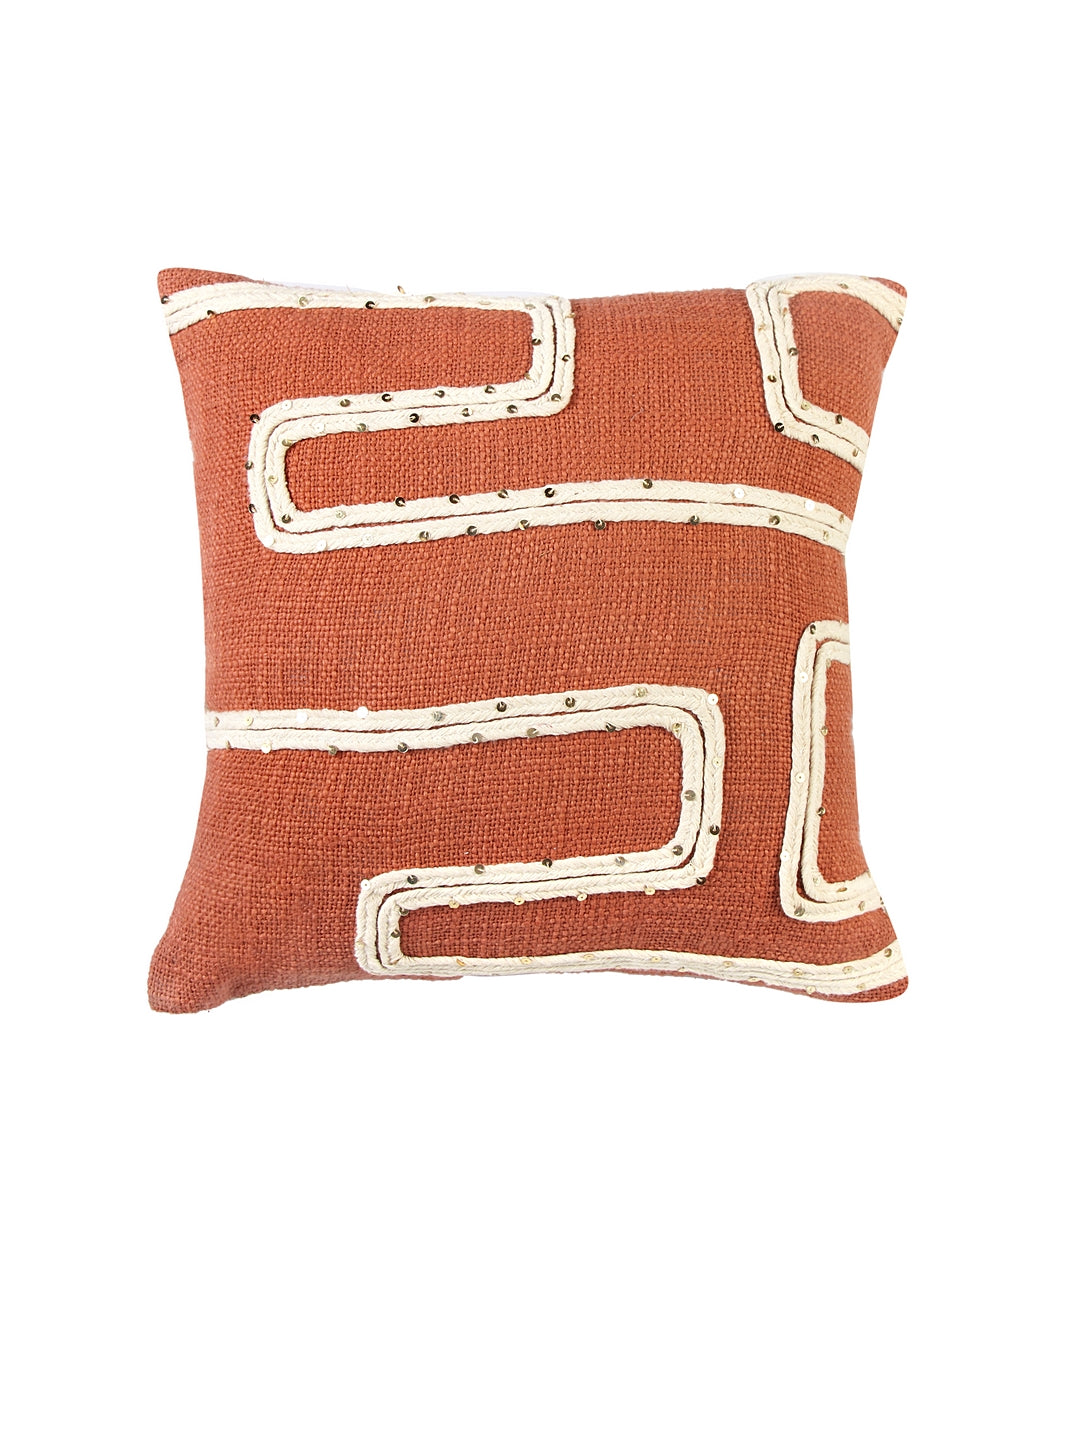 Trellis Terracotta Cushion Cover